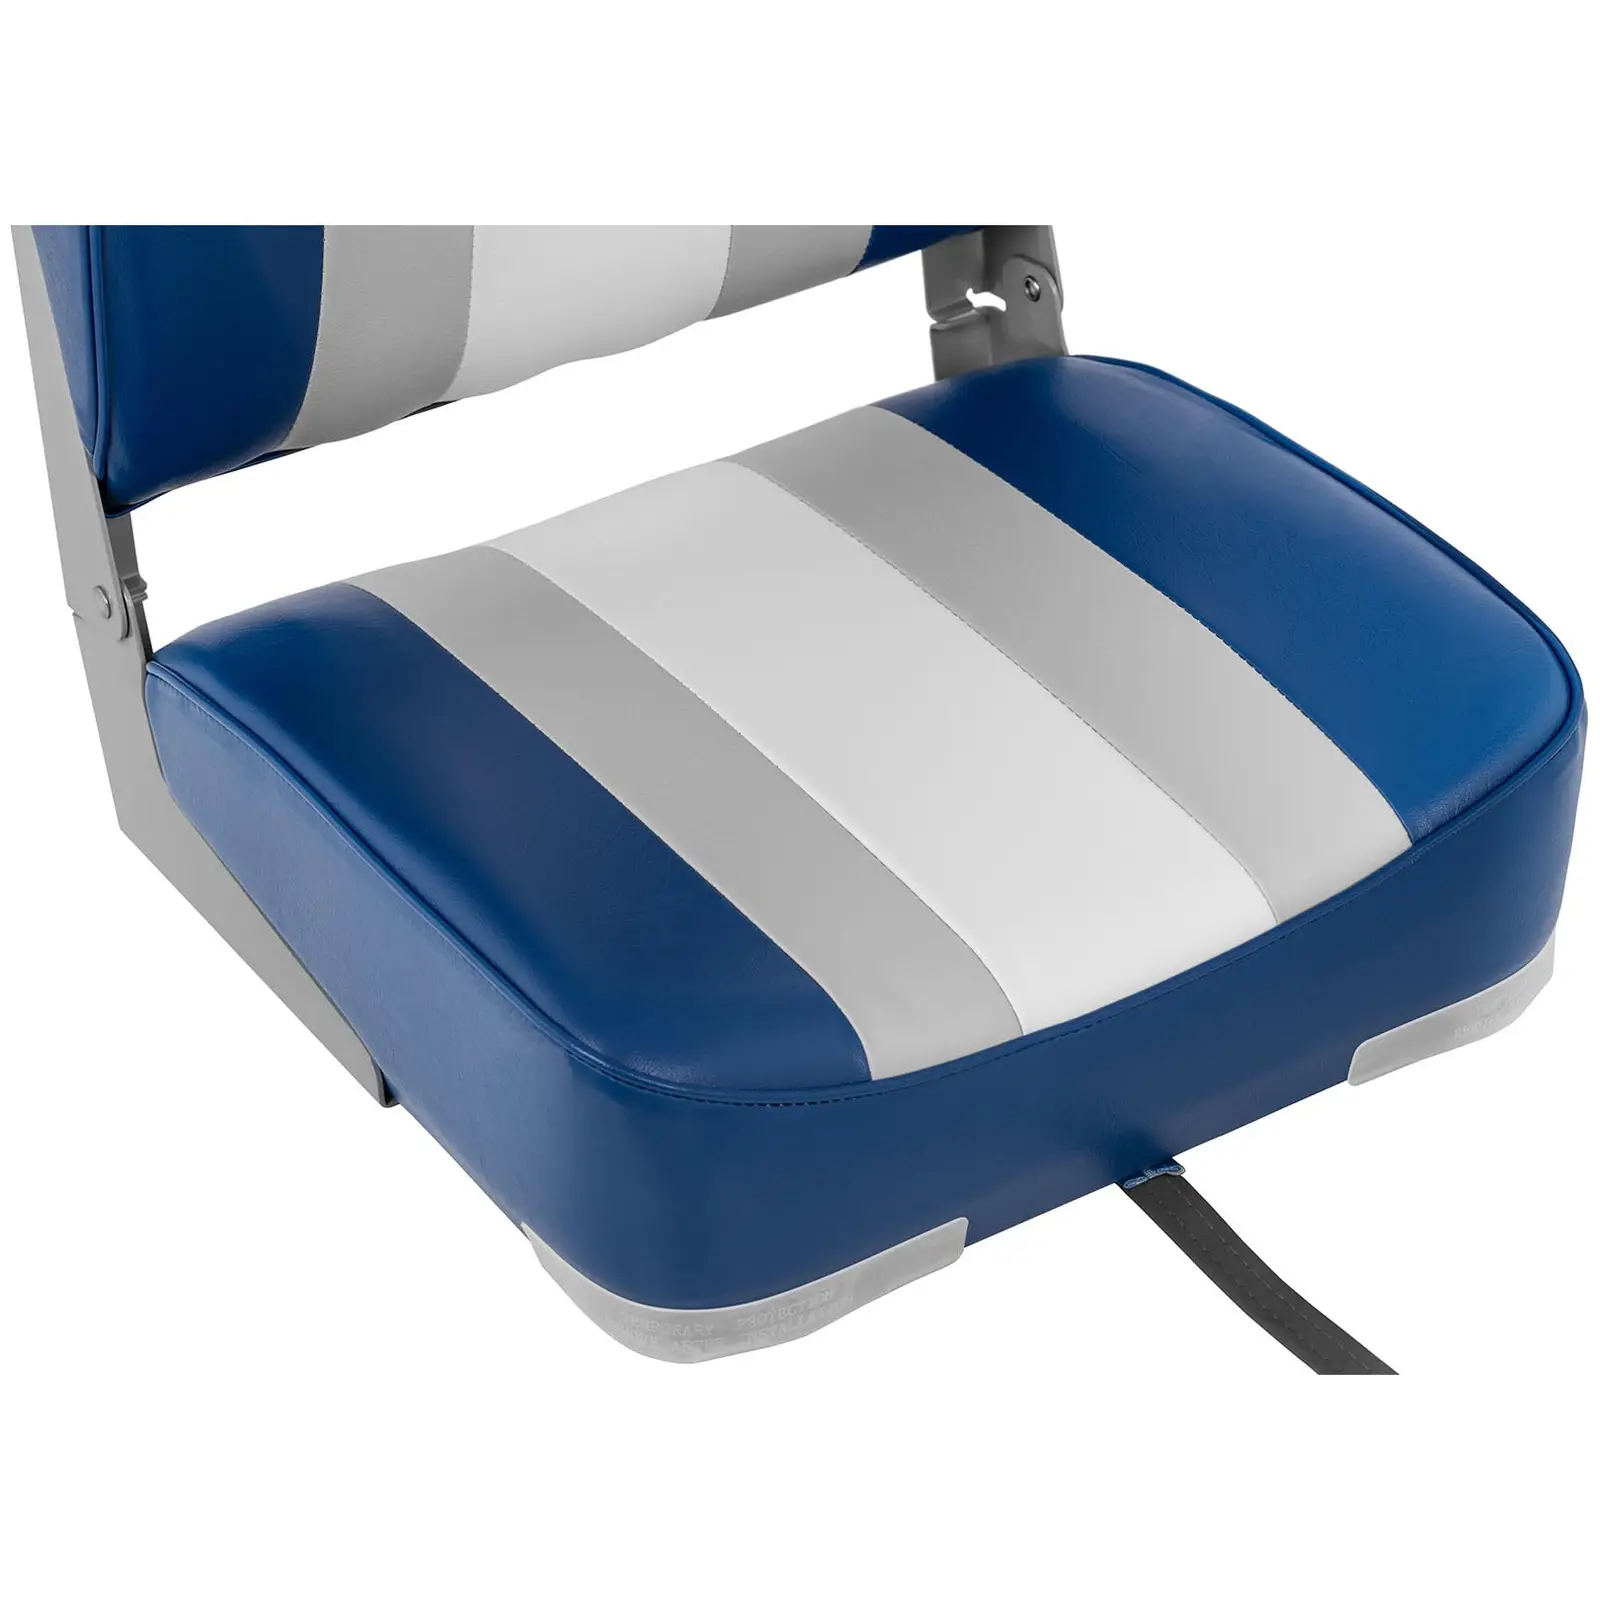 Fotel do łodzi - 36x43x60 cm - biały, niebieski, szary